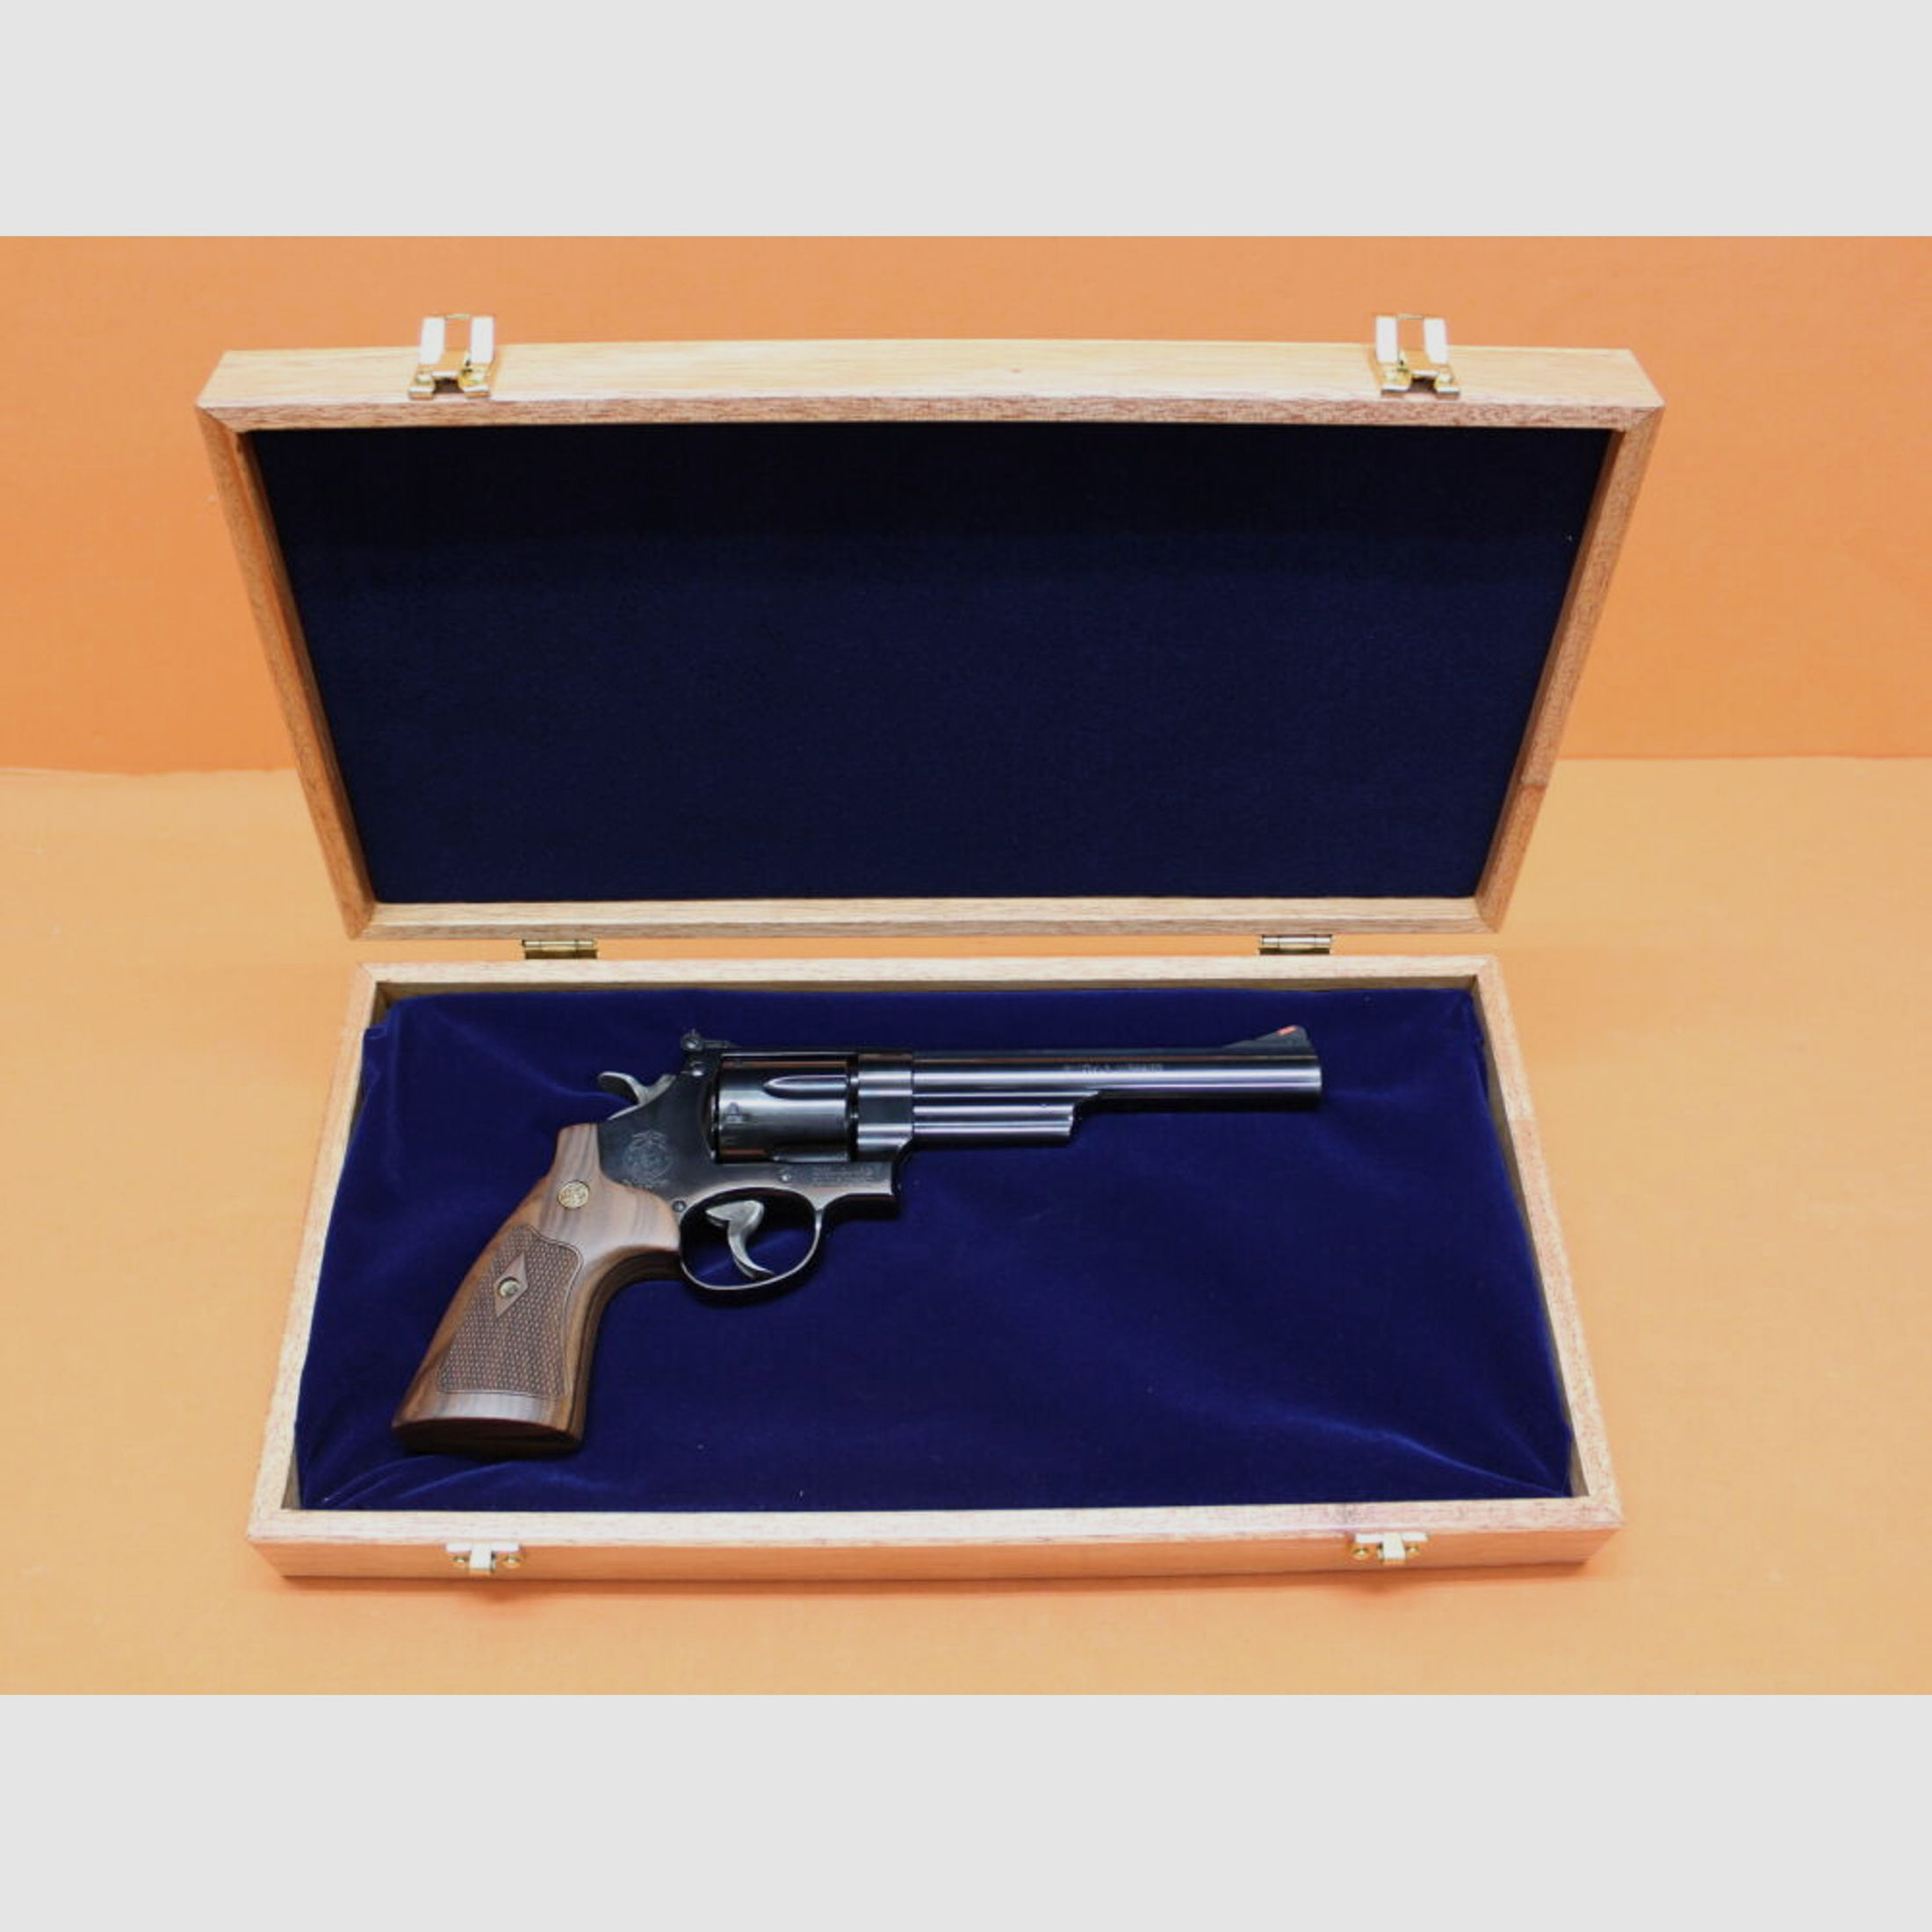 Smith & Wesson/S&W	 Revolver .44RemMagnum Smith&Wesson/ S&W29-10 brüniert, 6,5" Lauf/ Mikrometervisier/ Holzgriffschalen